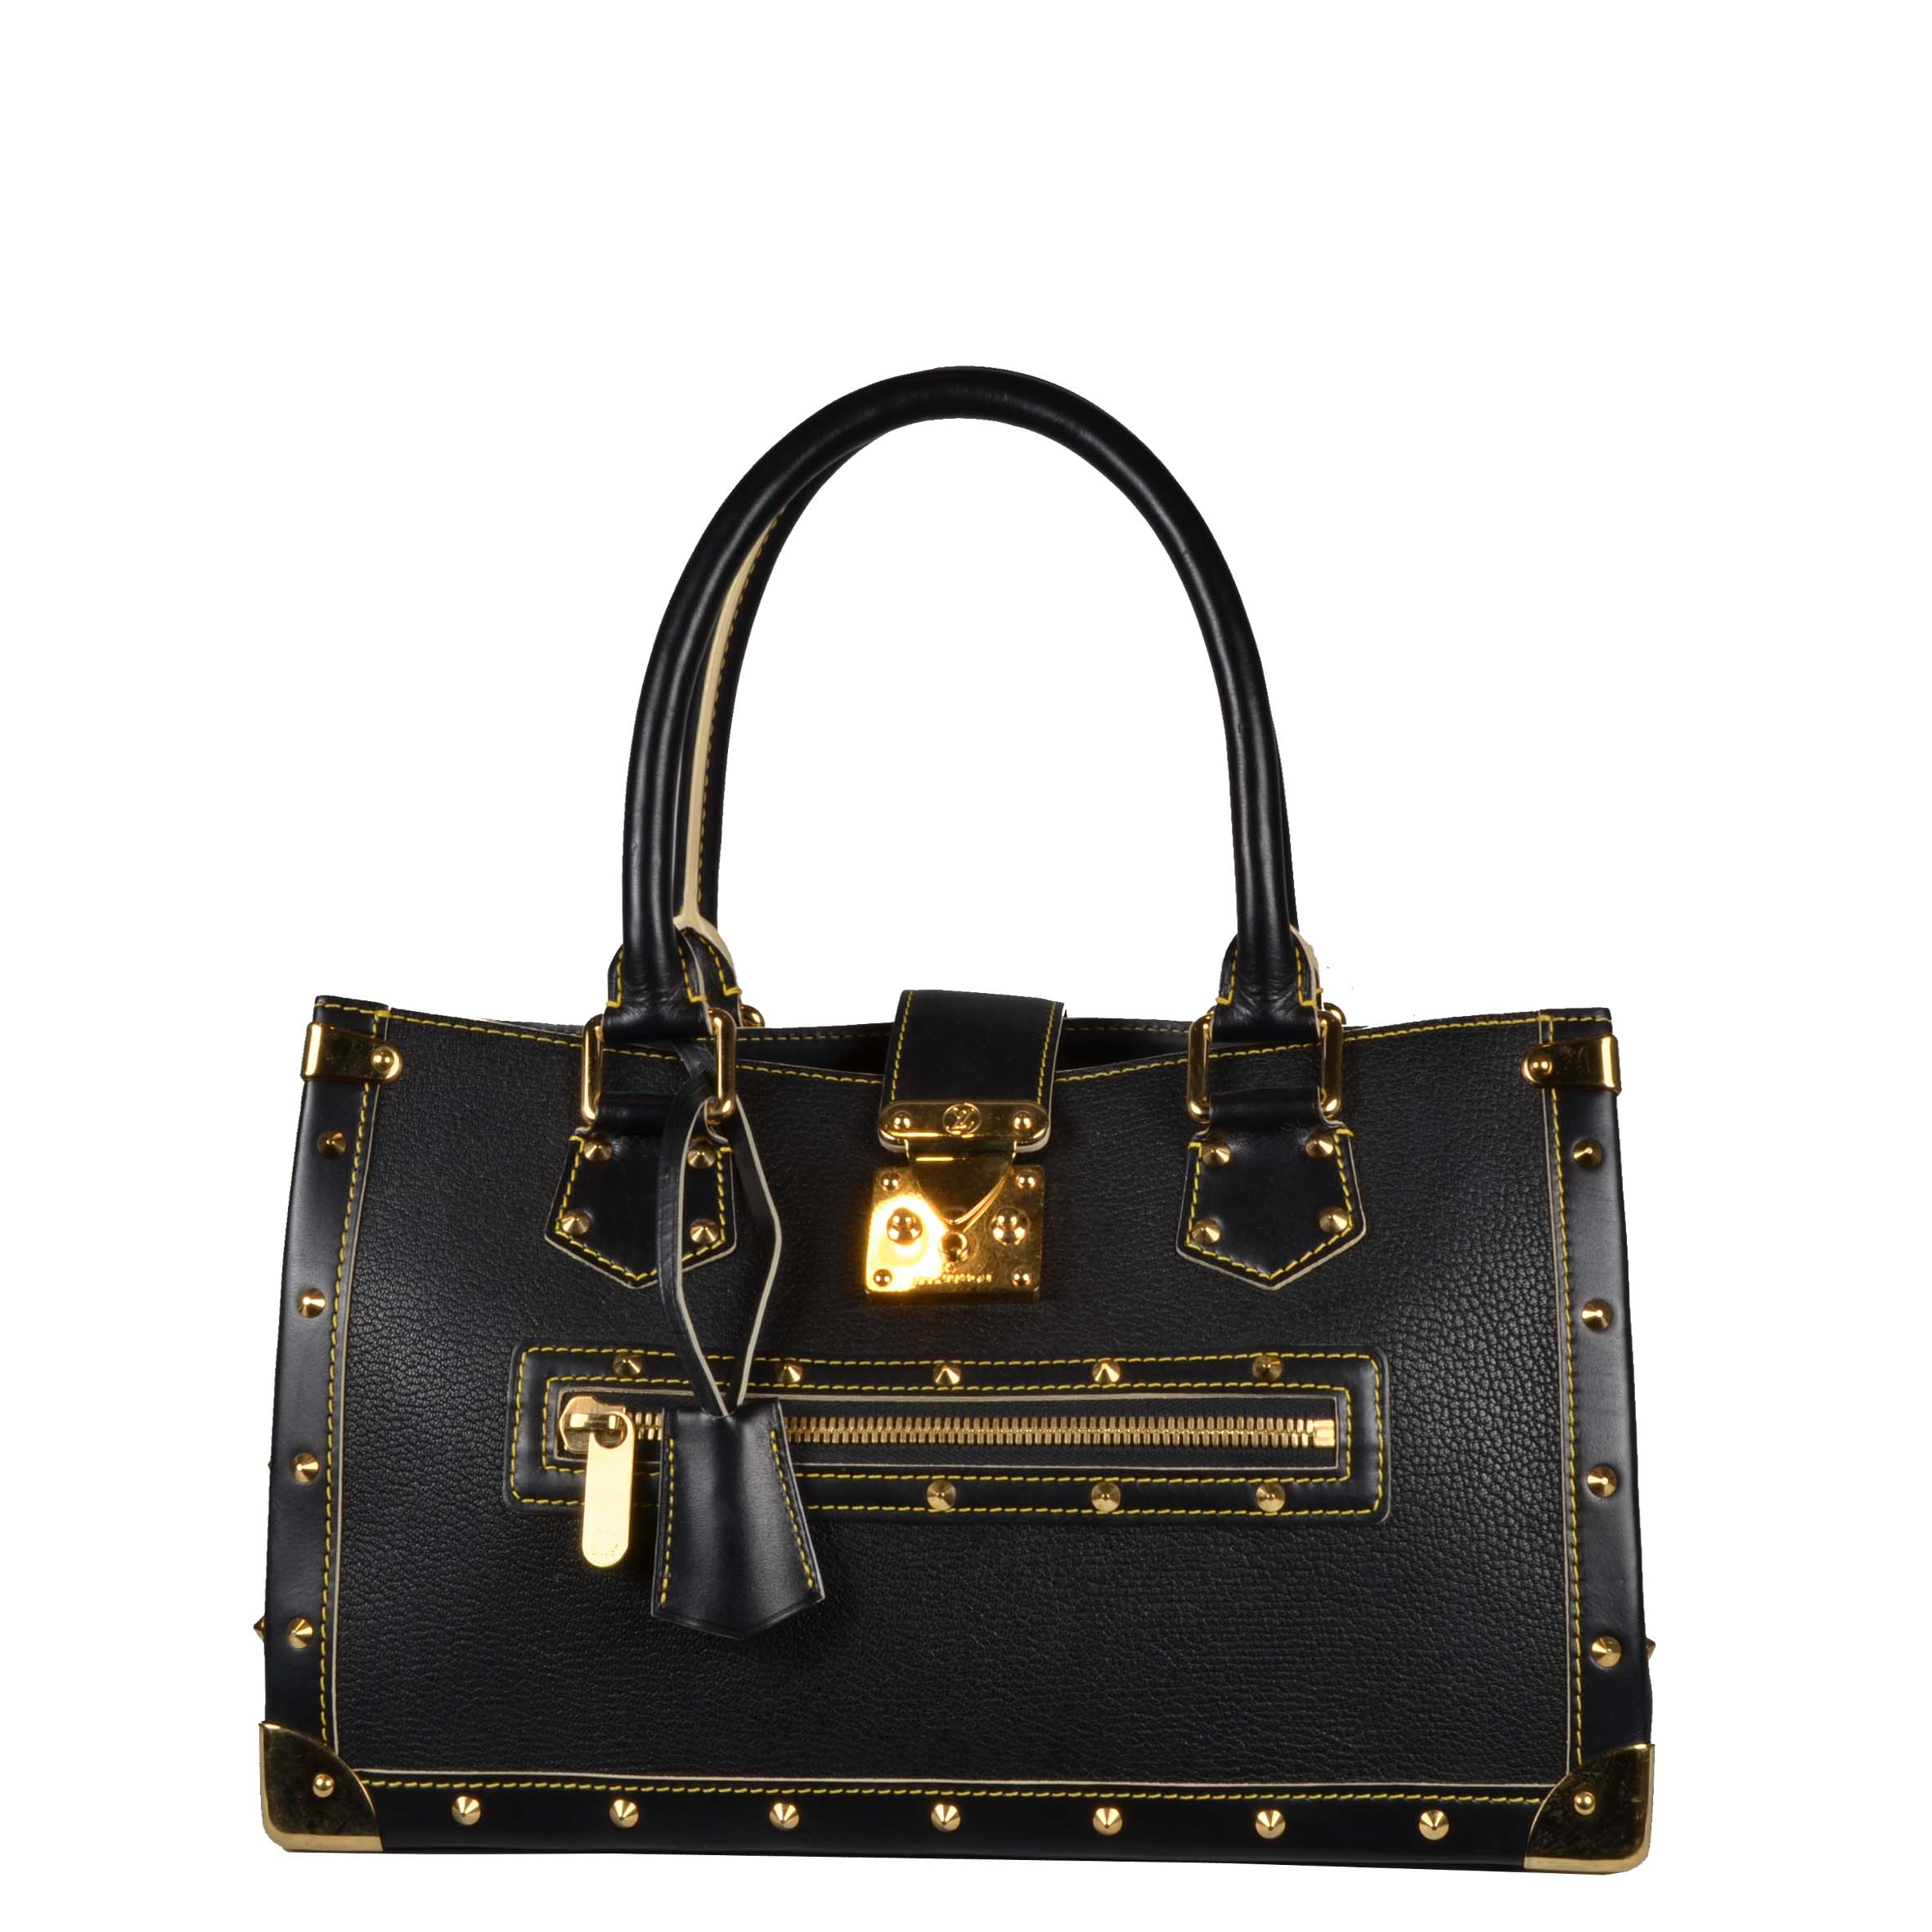 Louis Vuitton Tasche Suhali schwarz gold